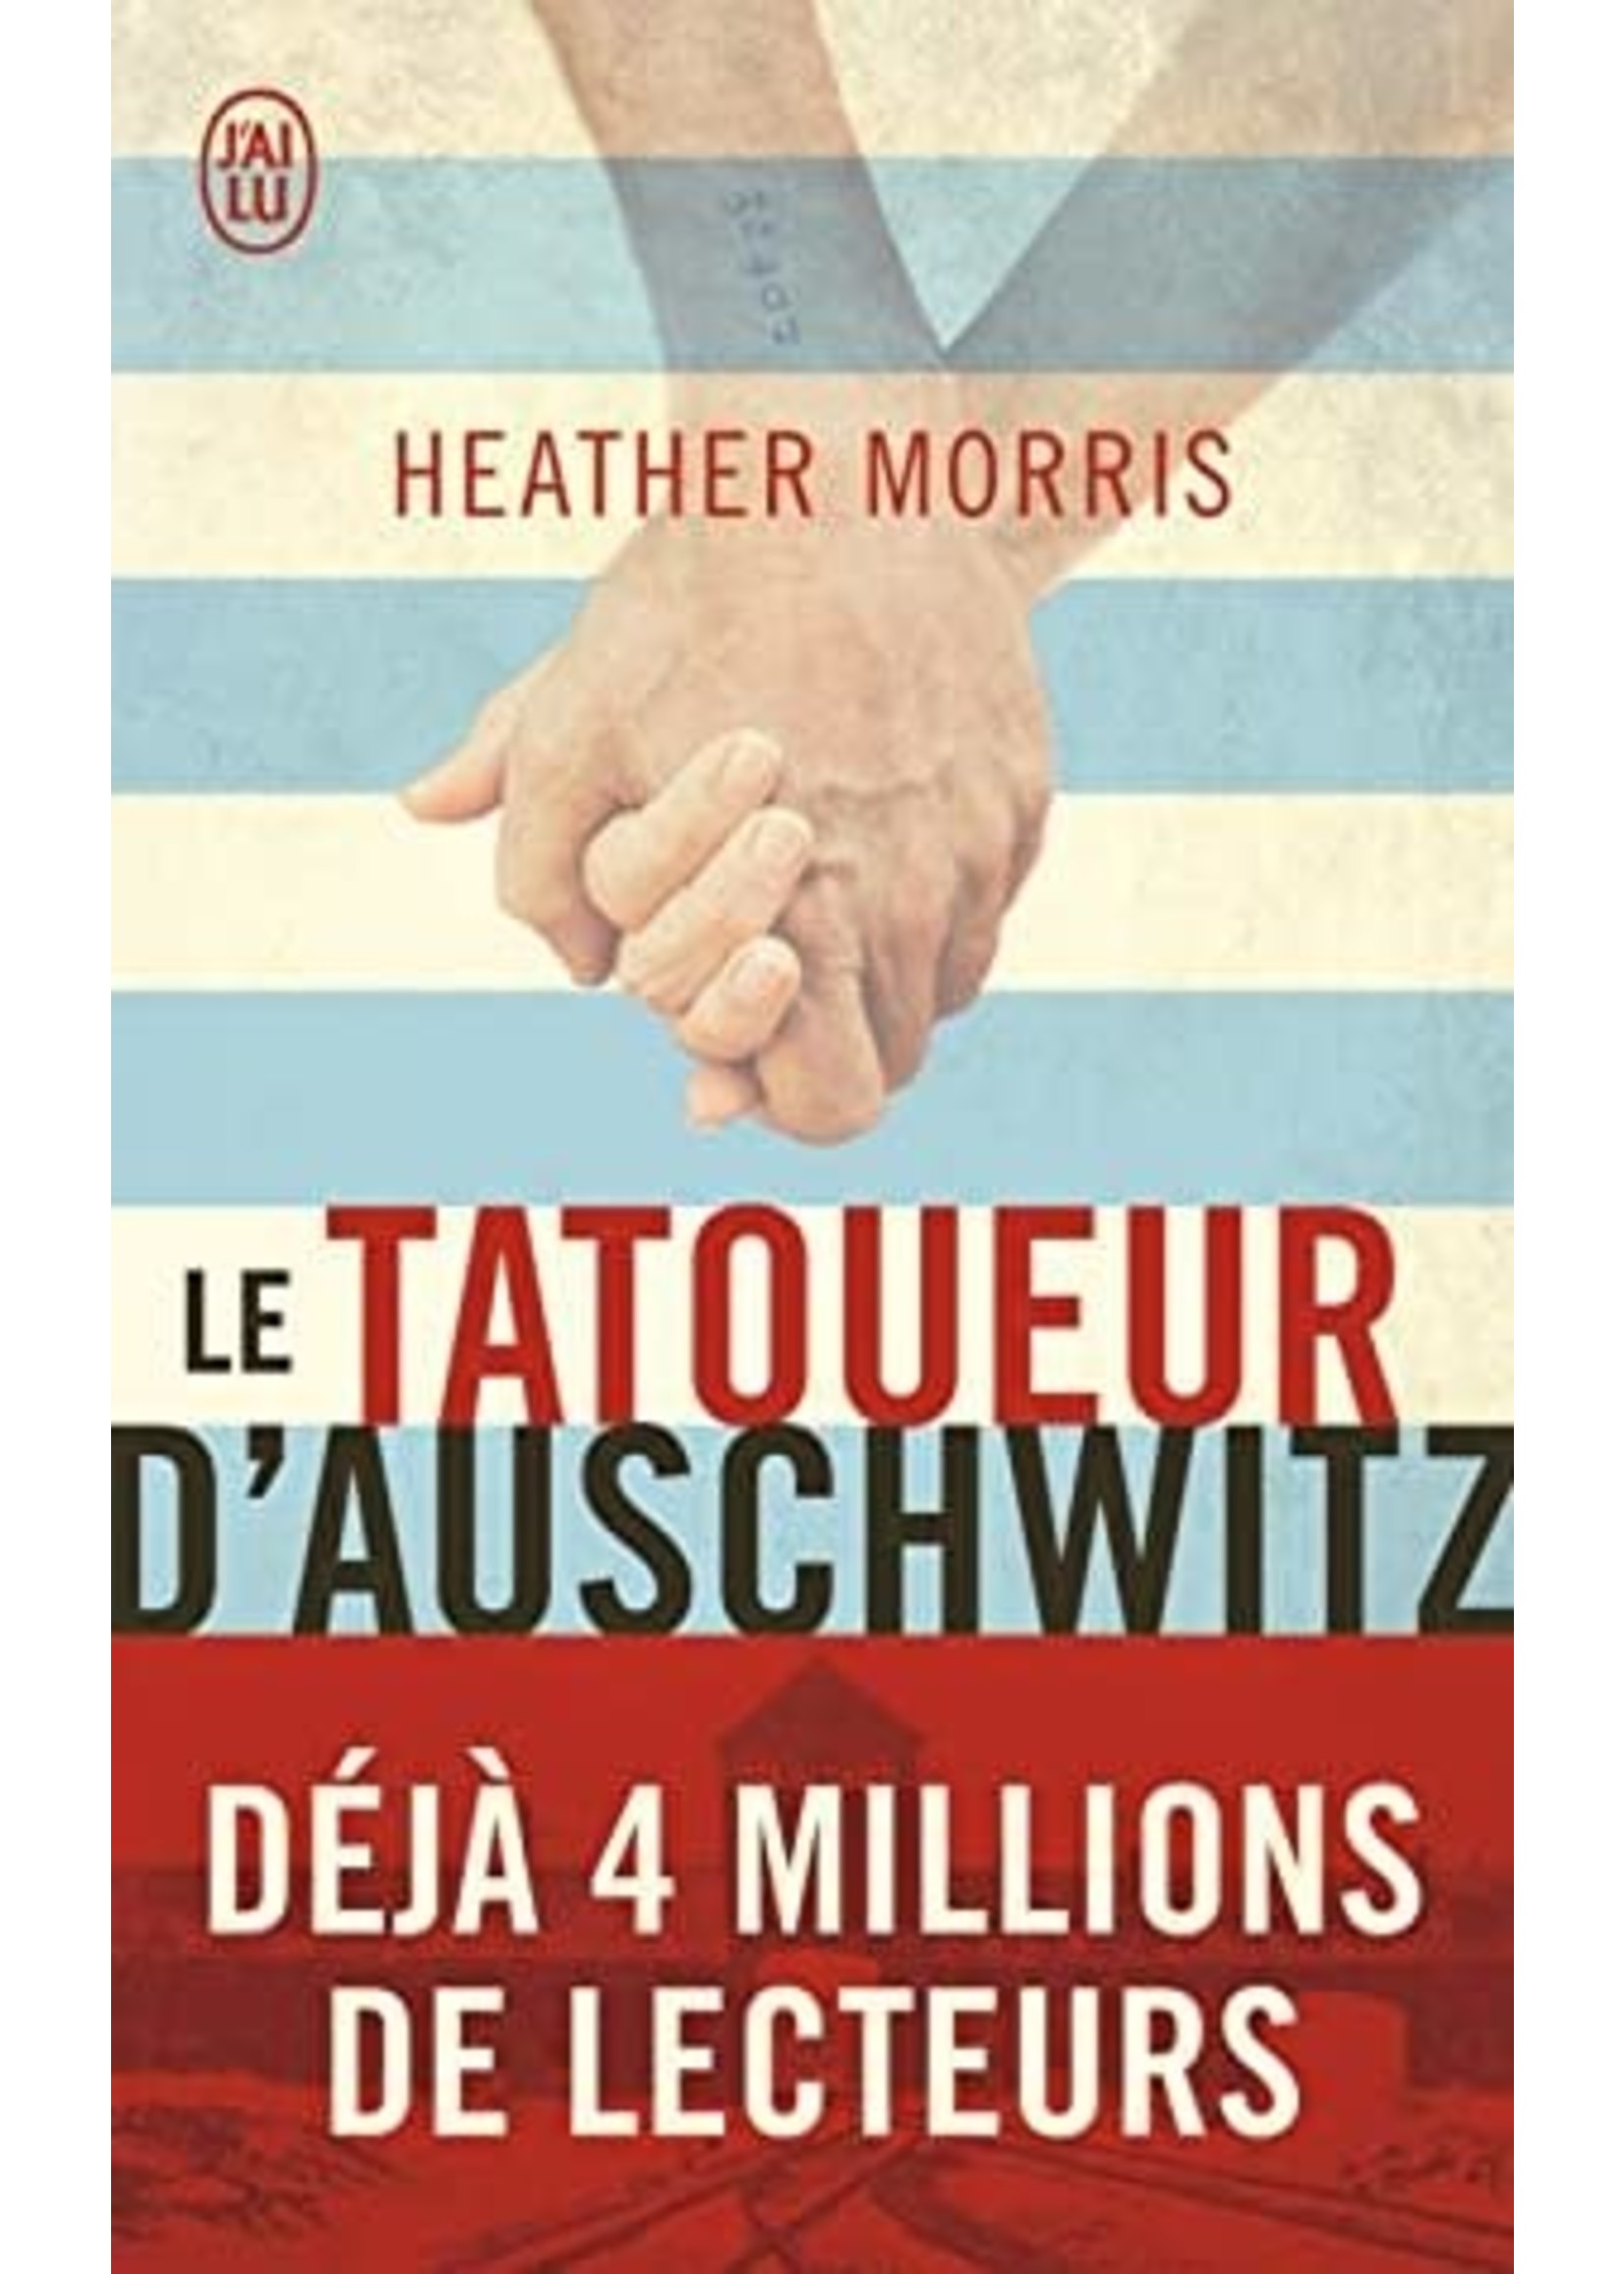 Le Tatoueur D'Auschwitz by Heather Morris